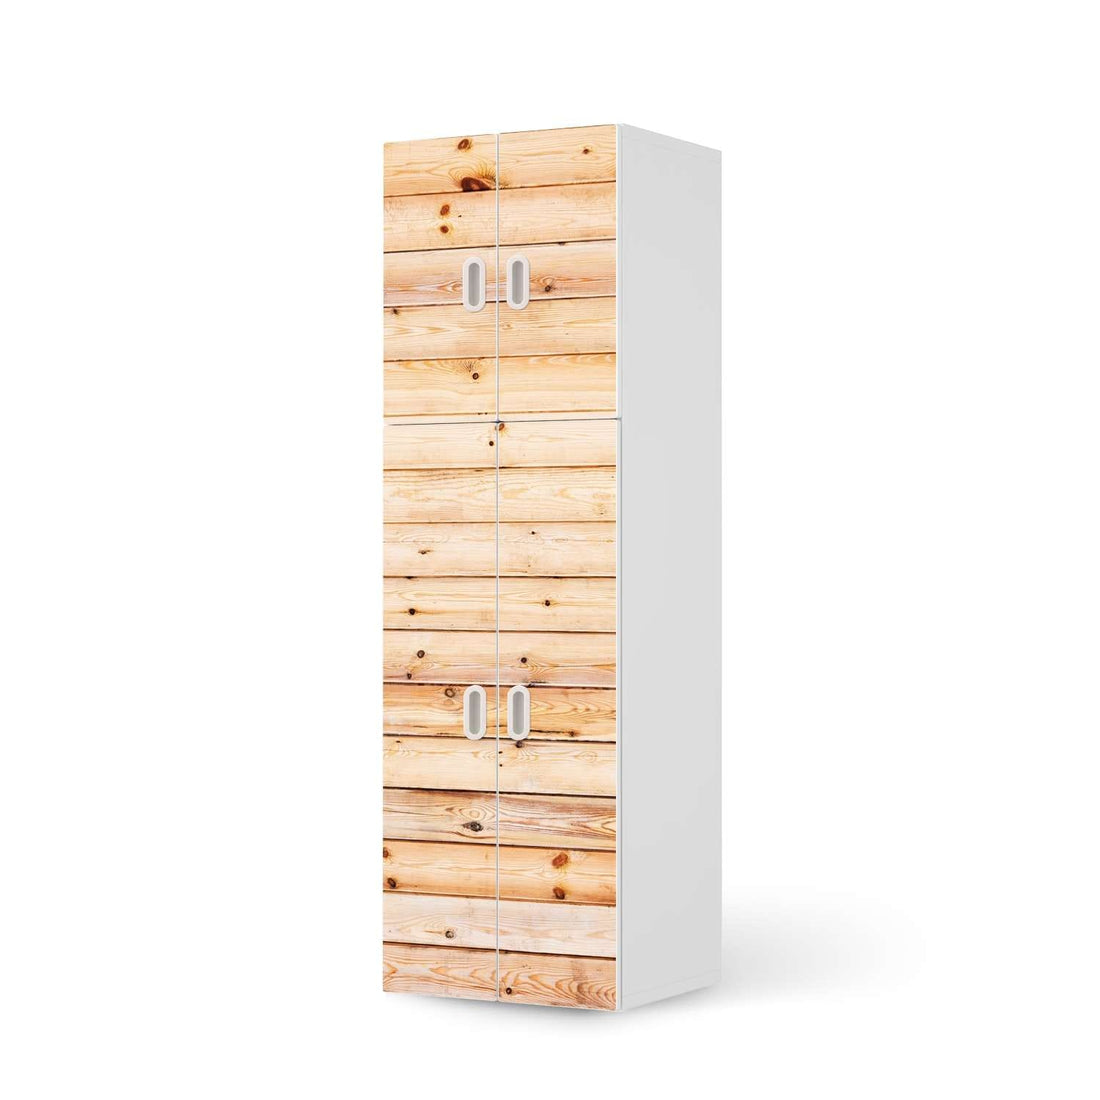 Selbstklebende Folie Bright Planks - IKEA Stuva / Fritids kombiniert - 2 große Türen und 2 kleine Türen  - weiss